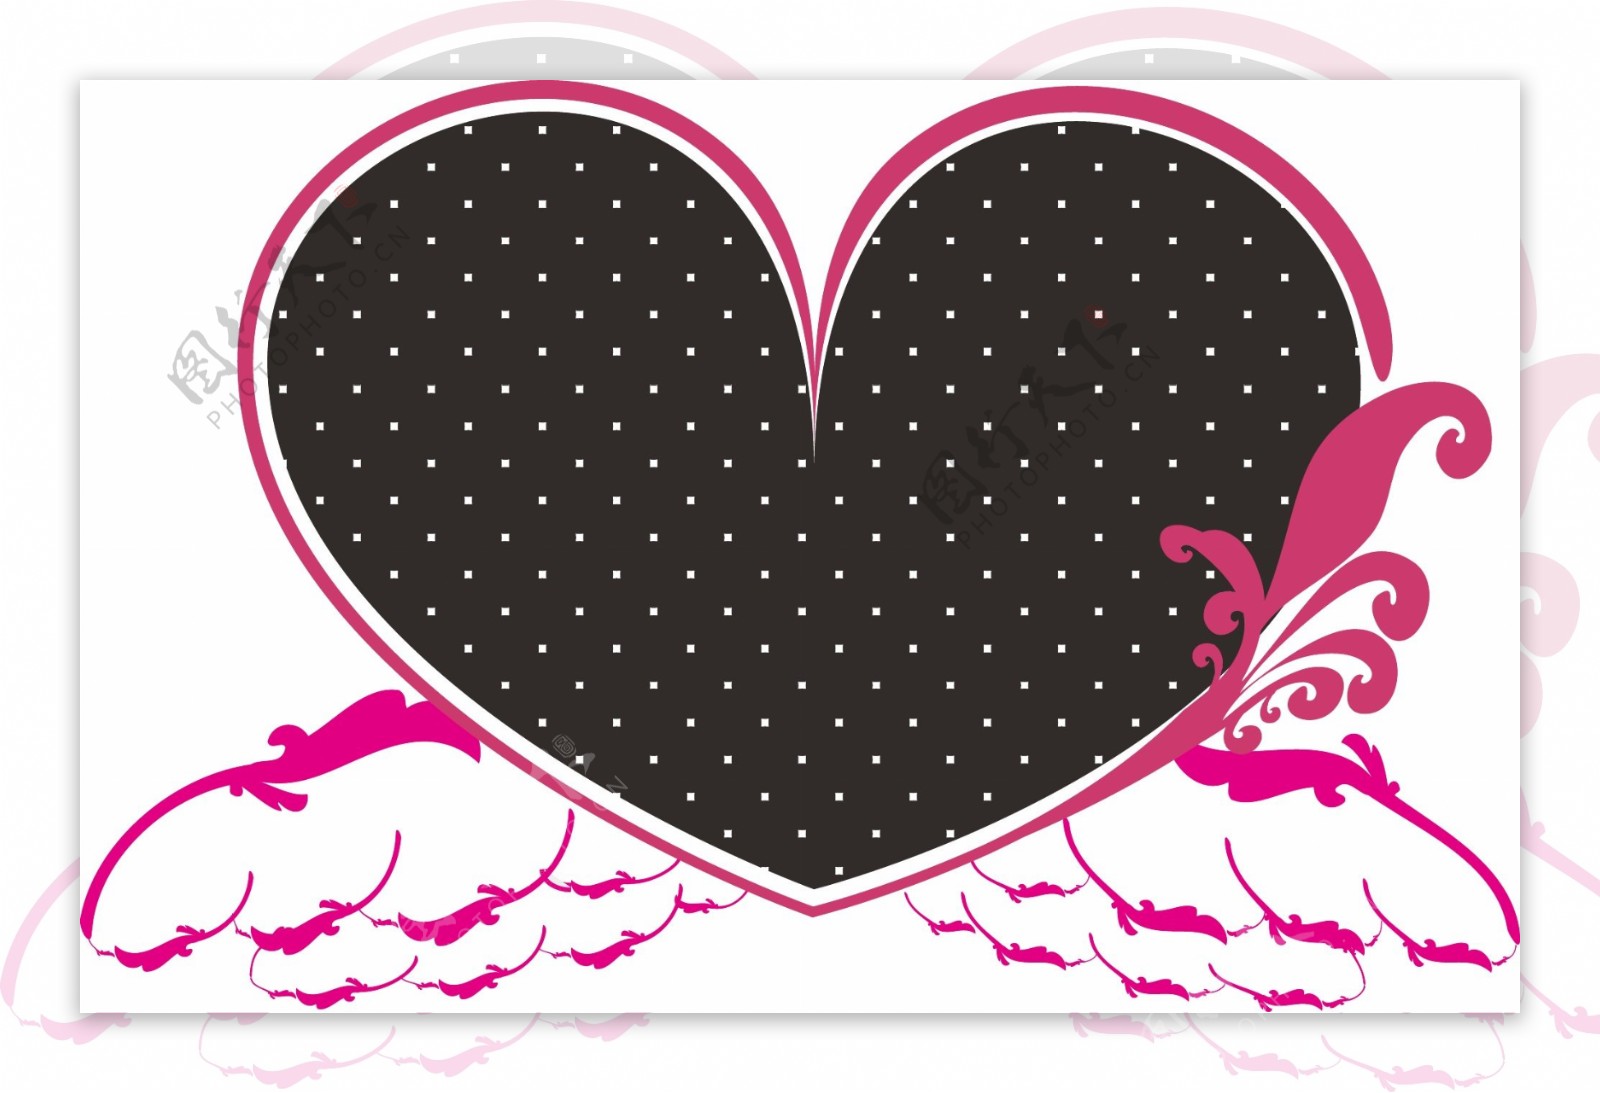 愛心翅膀logo設計图片